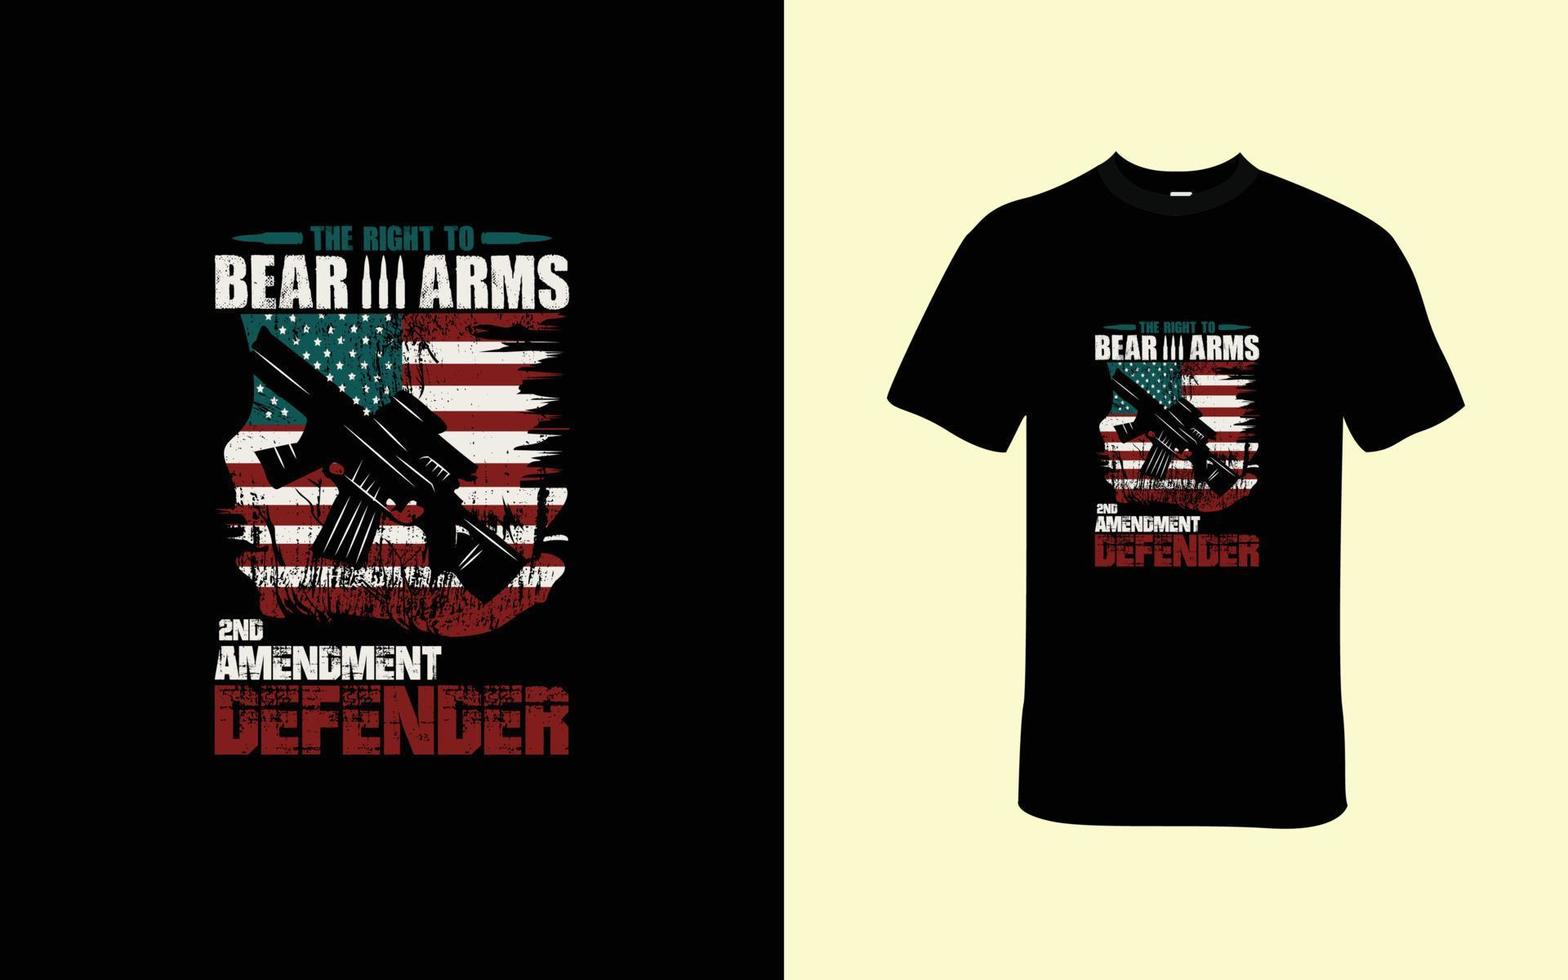 il giusto per orso braccia, secondo emendamento difensore maglietta design vettore